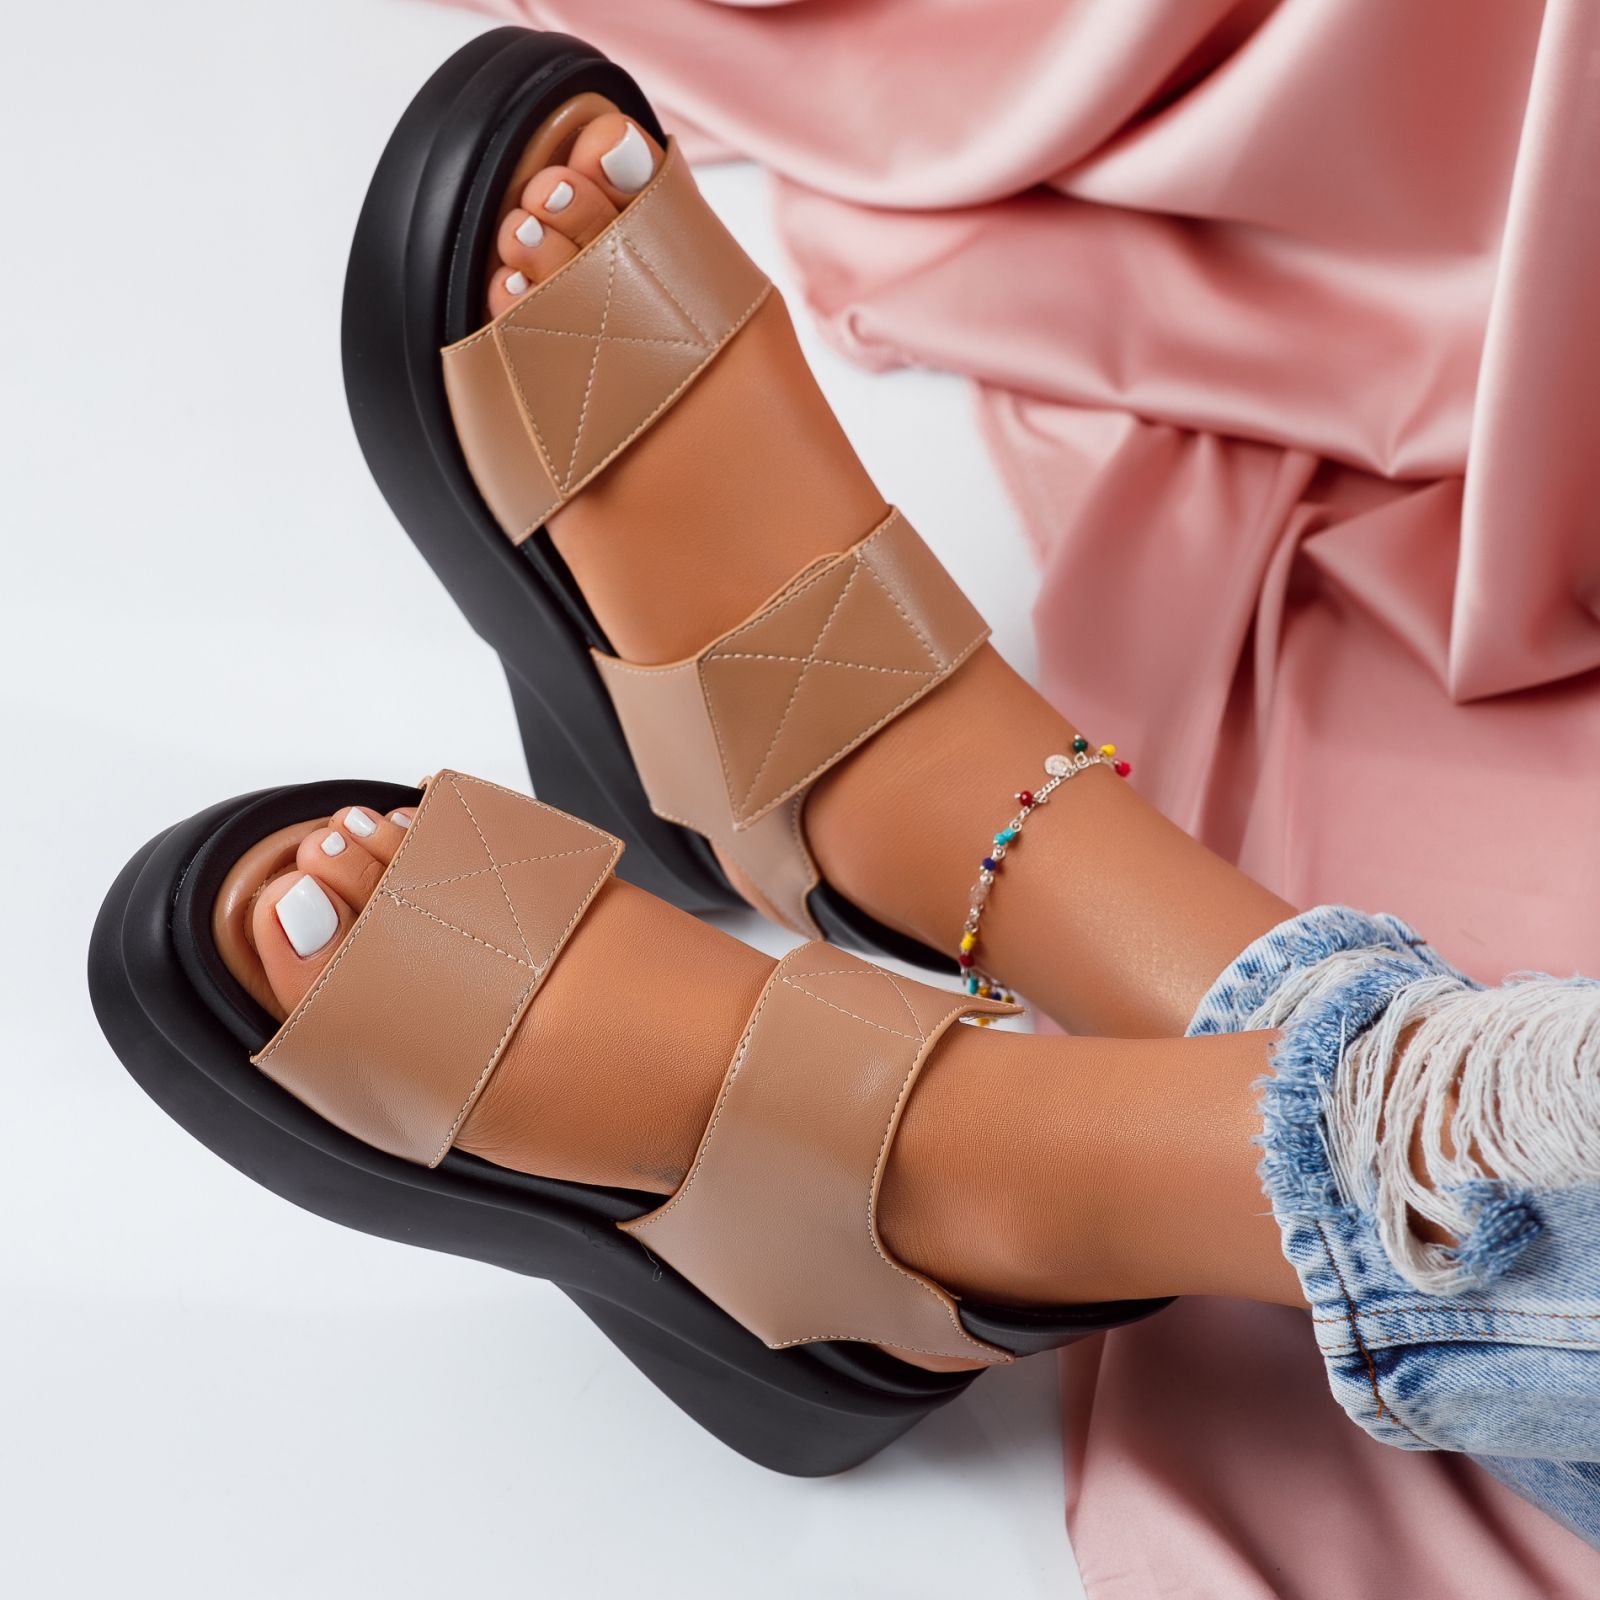 Дамски сандали с платформата Melanie кафяв #5131M